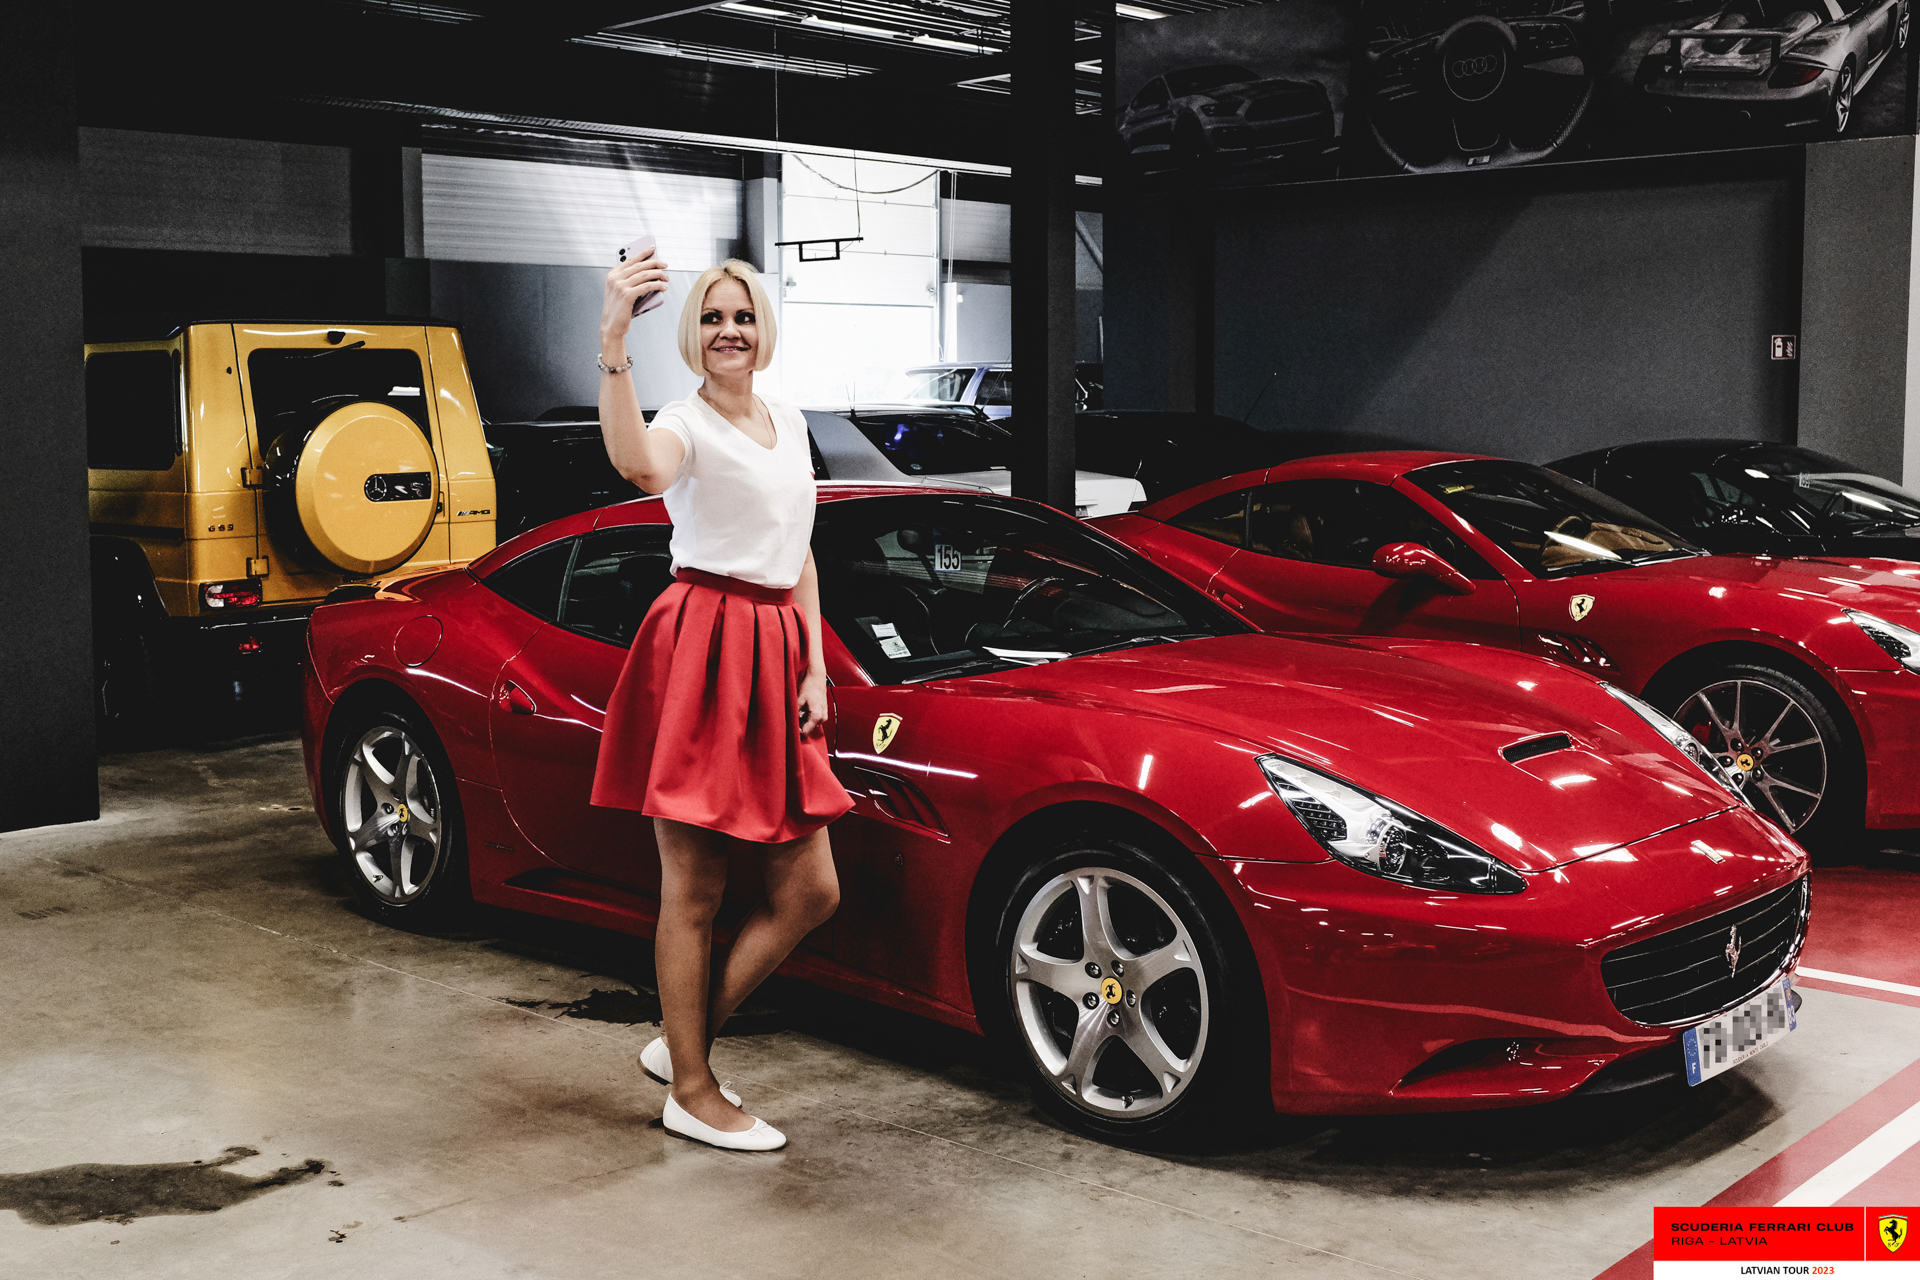 An SFC Riga grid girl and Ferraris in Stuttgart’s garage.